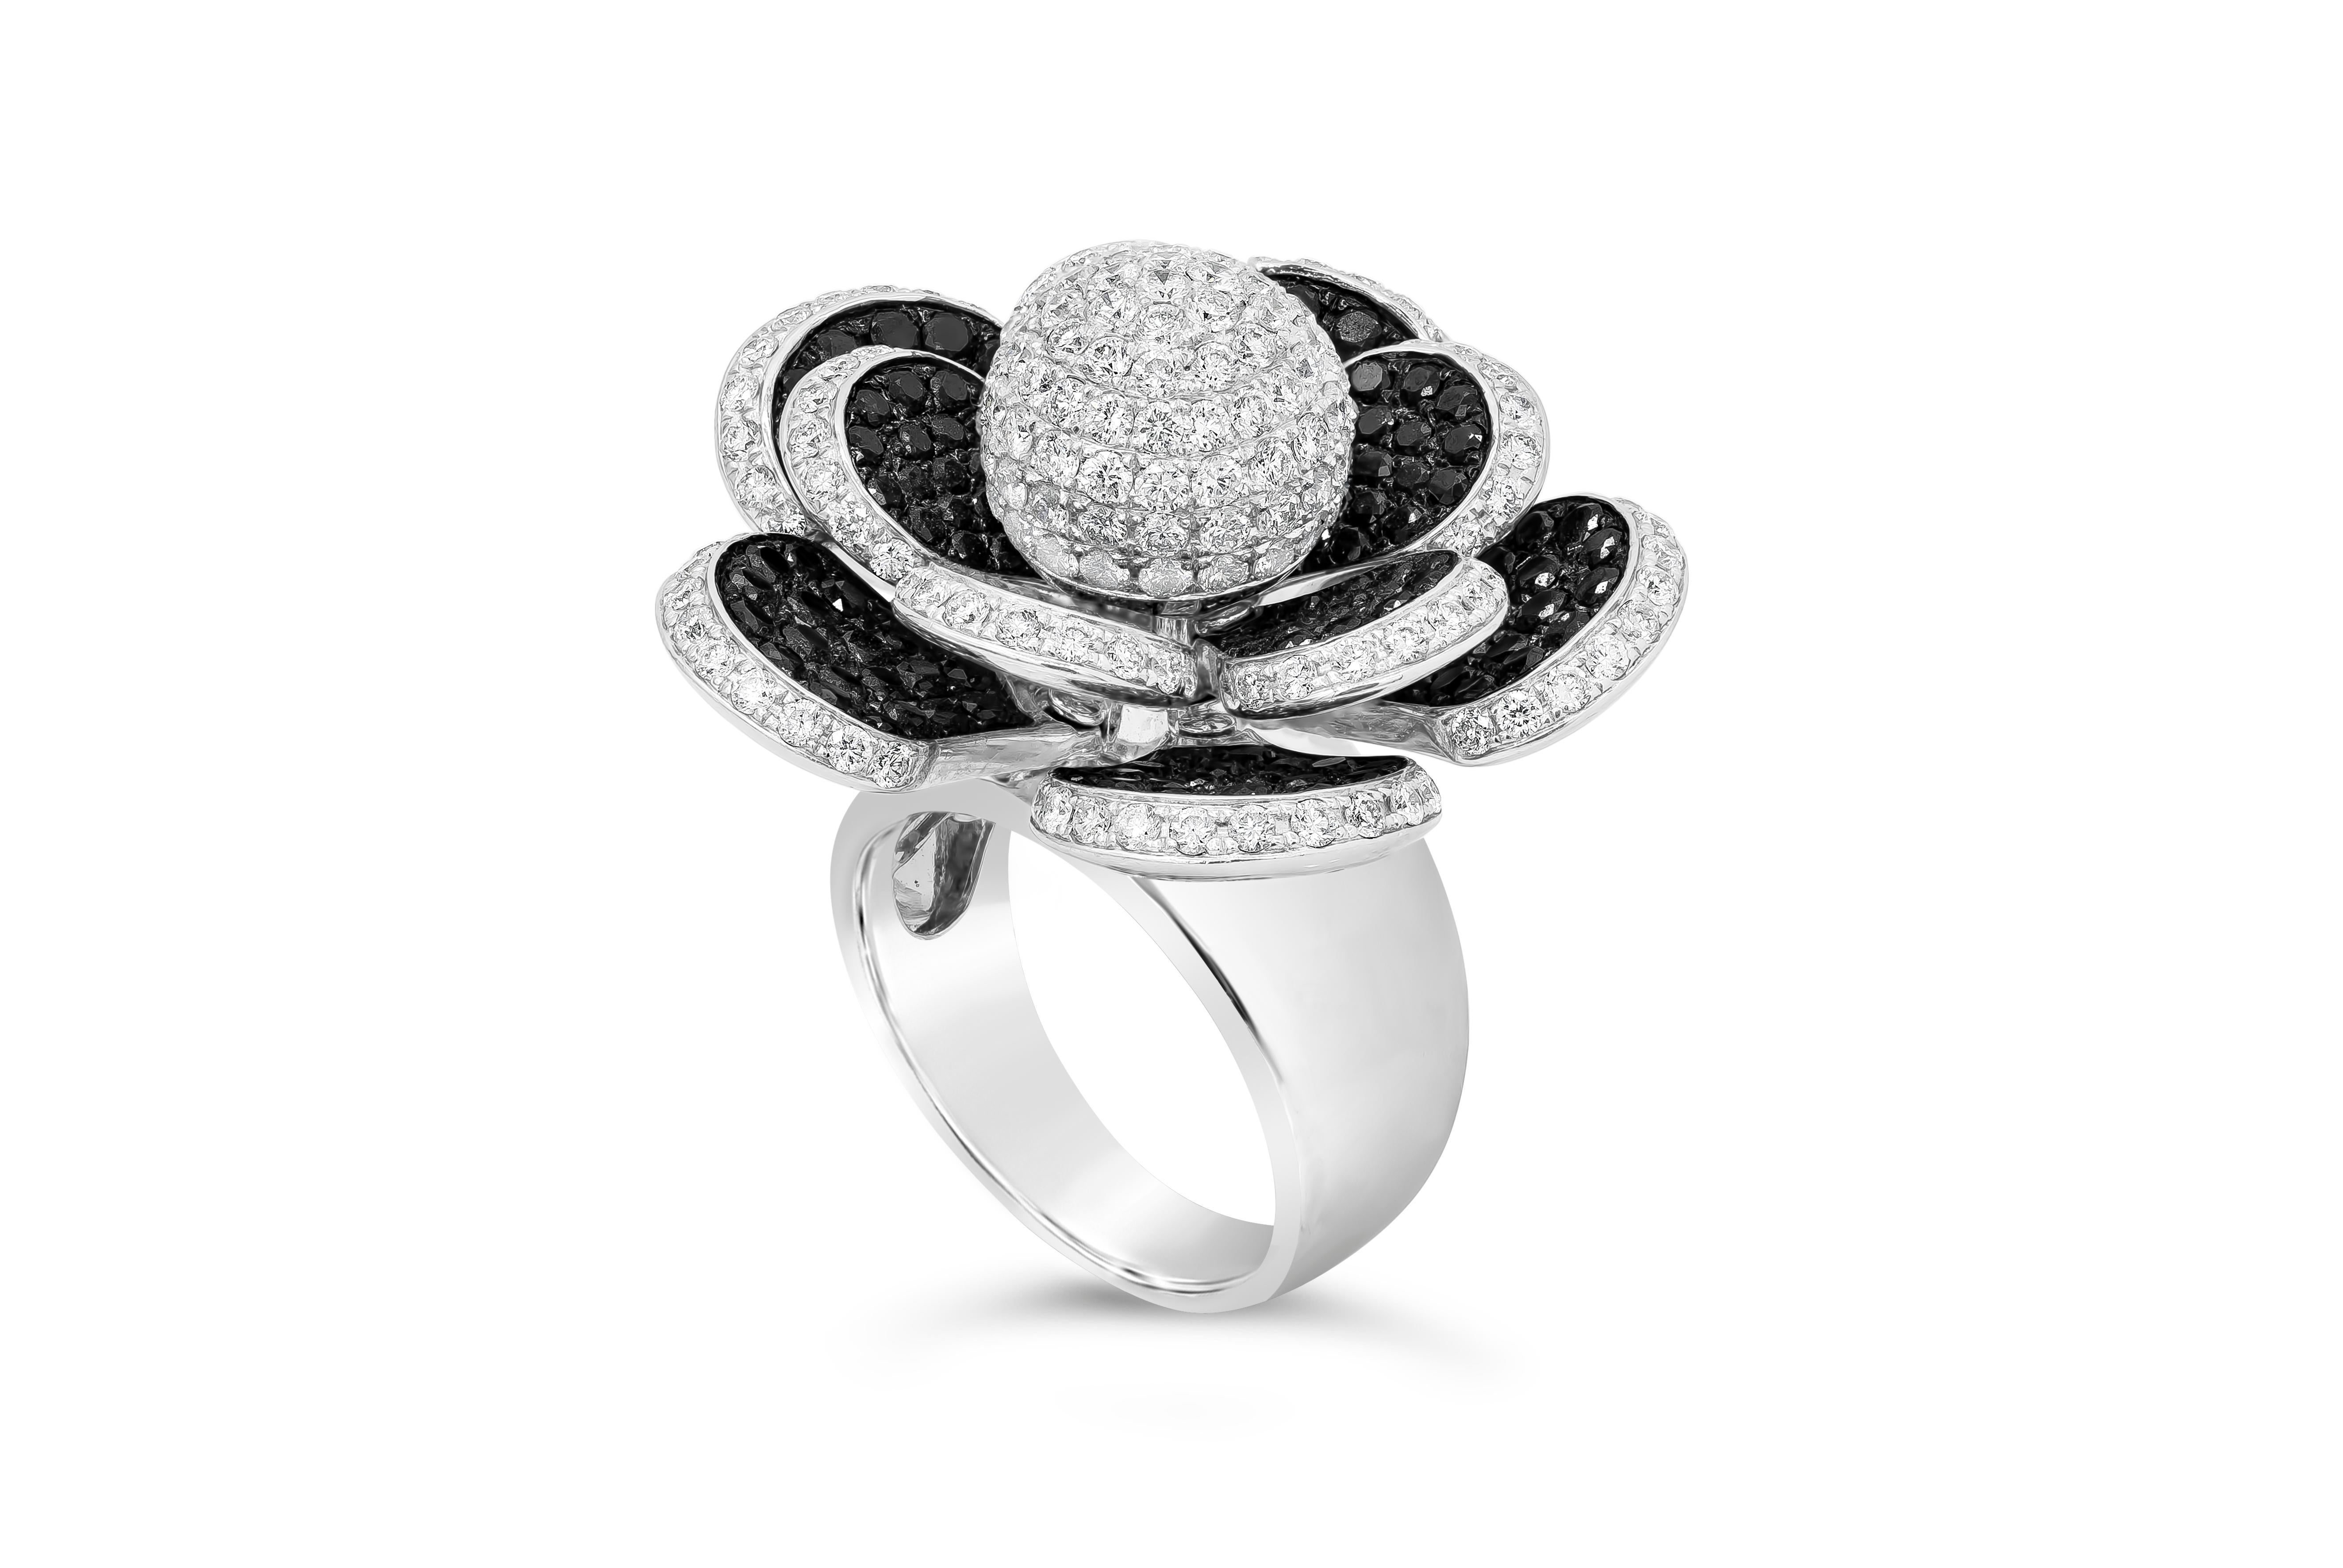 Ein modischer Ring mit einer runden, mit runden Brillanten besetzten Kugel, umgeben von Blütenblättern, die mit schwarzen und weißen Diamanten besetzt sind. Die Blütenblätter sind beweglich und drehen sich um das Zentrum. Schwarze Diamanten haben